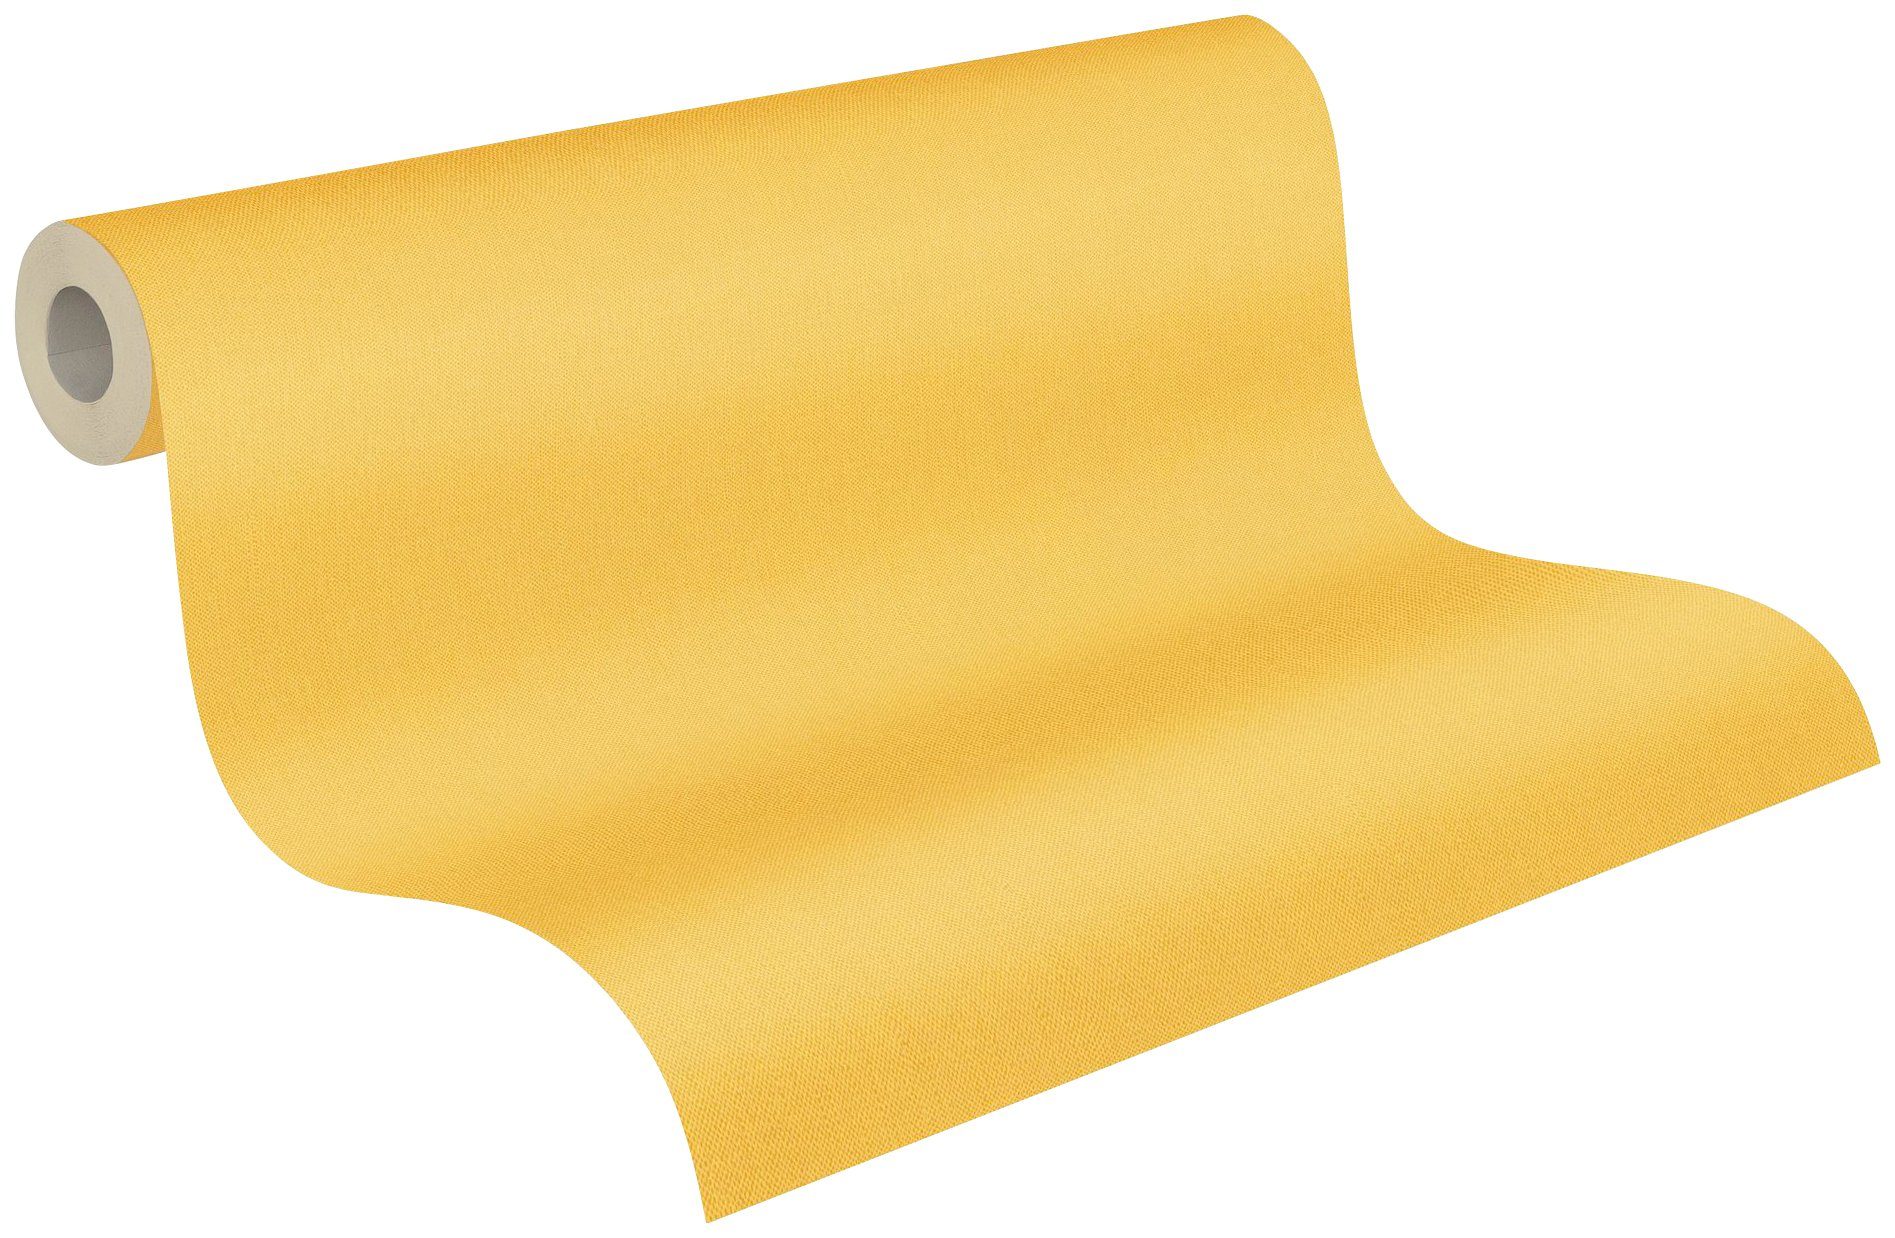 Architects Paper einfarbig Vliestapete Floral gelb Tapete glatt, unifarben, einfarbig, Uni Impression